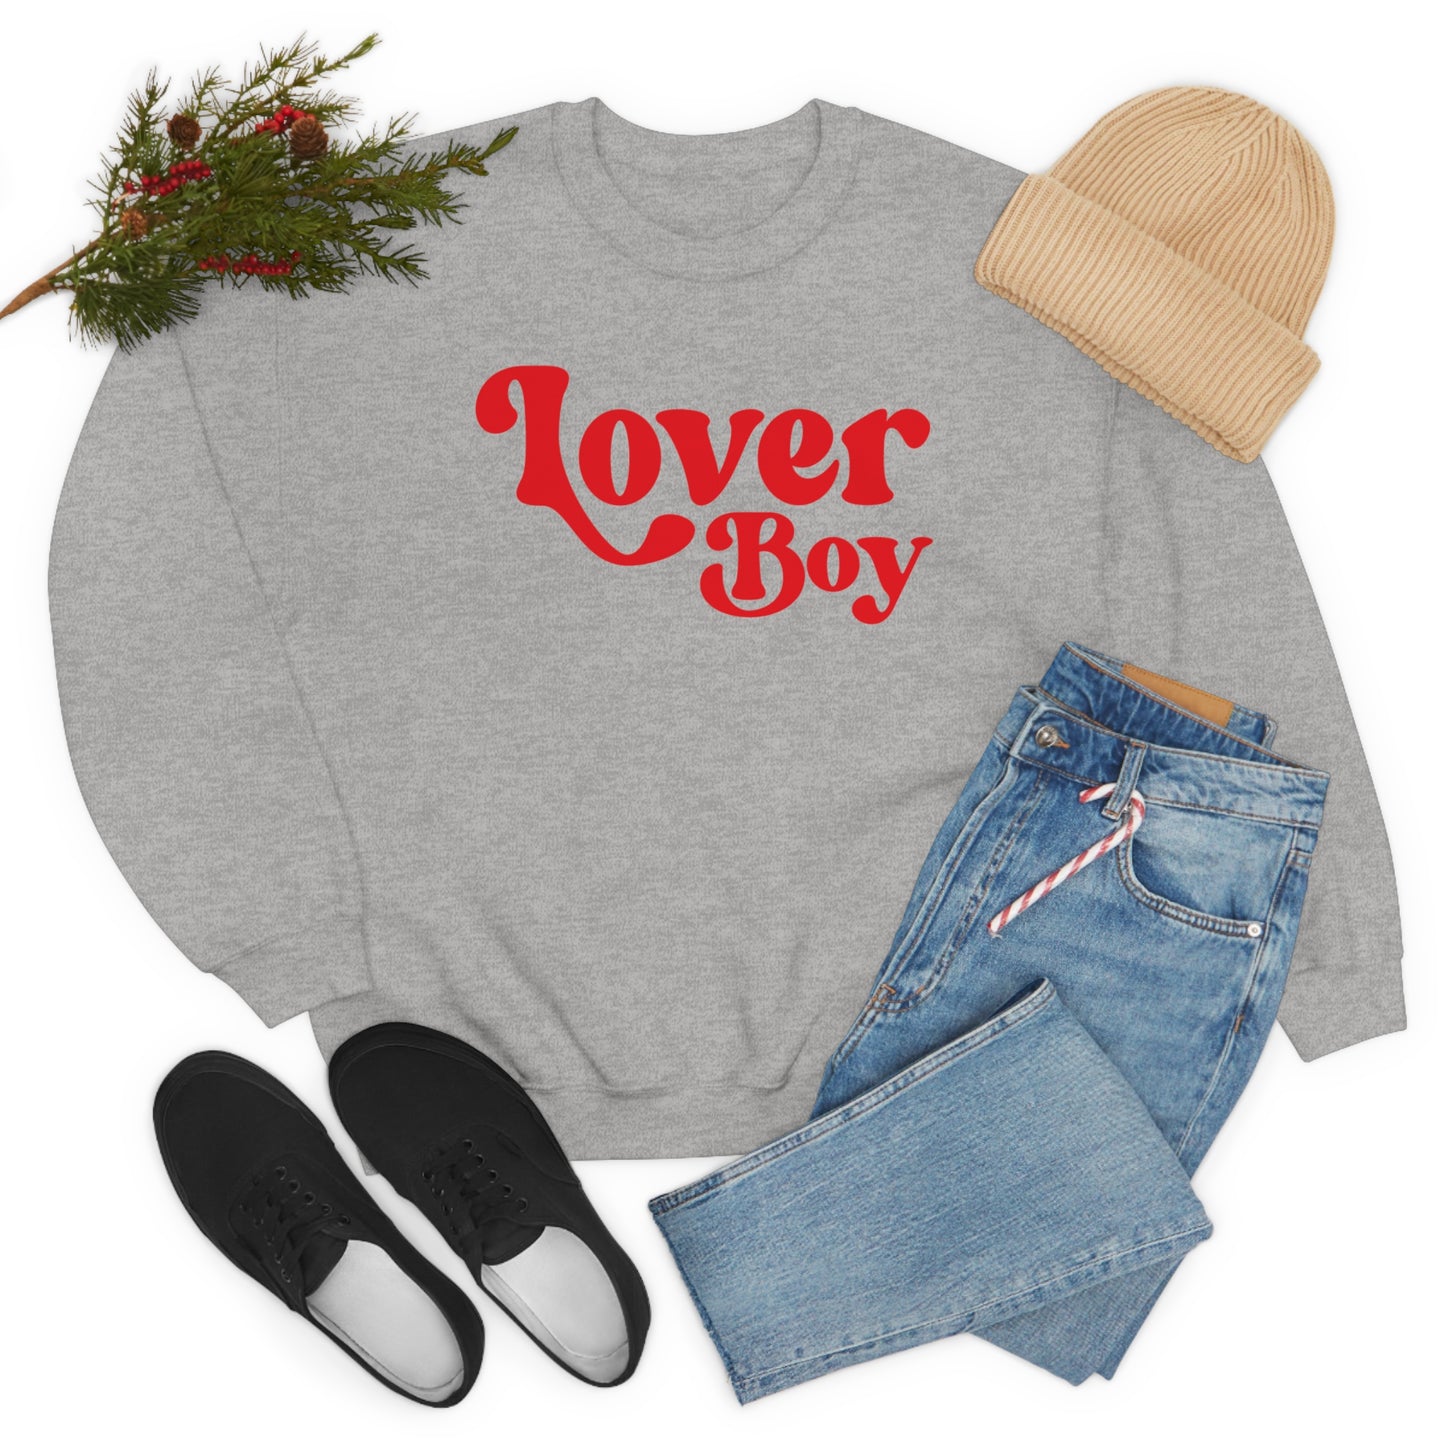 Lover Boy Valentines Day Unisex Heavy Blend Crewneck Sweatshirt